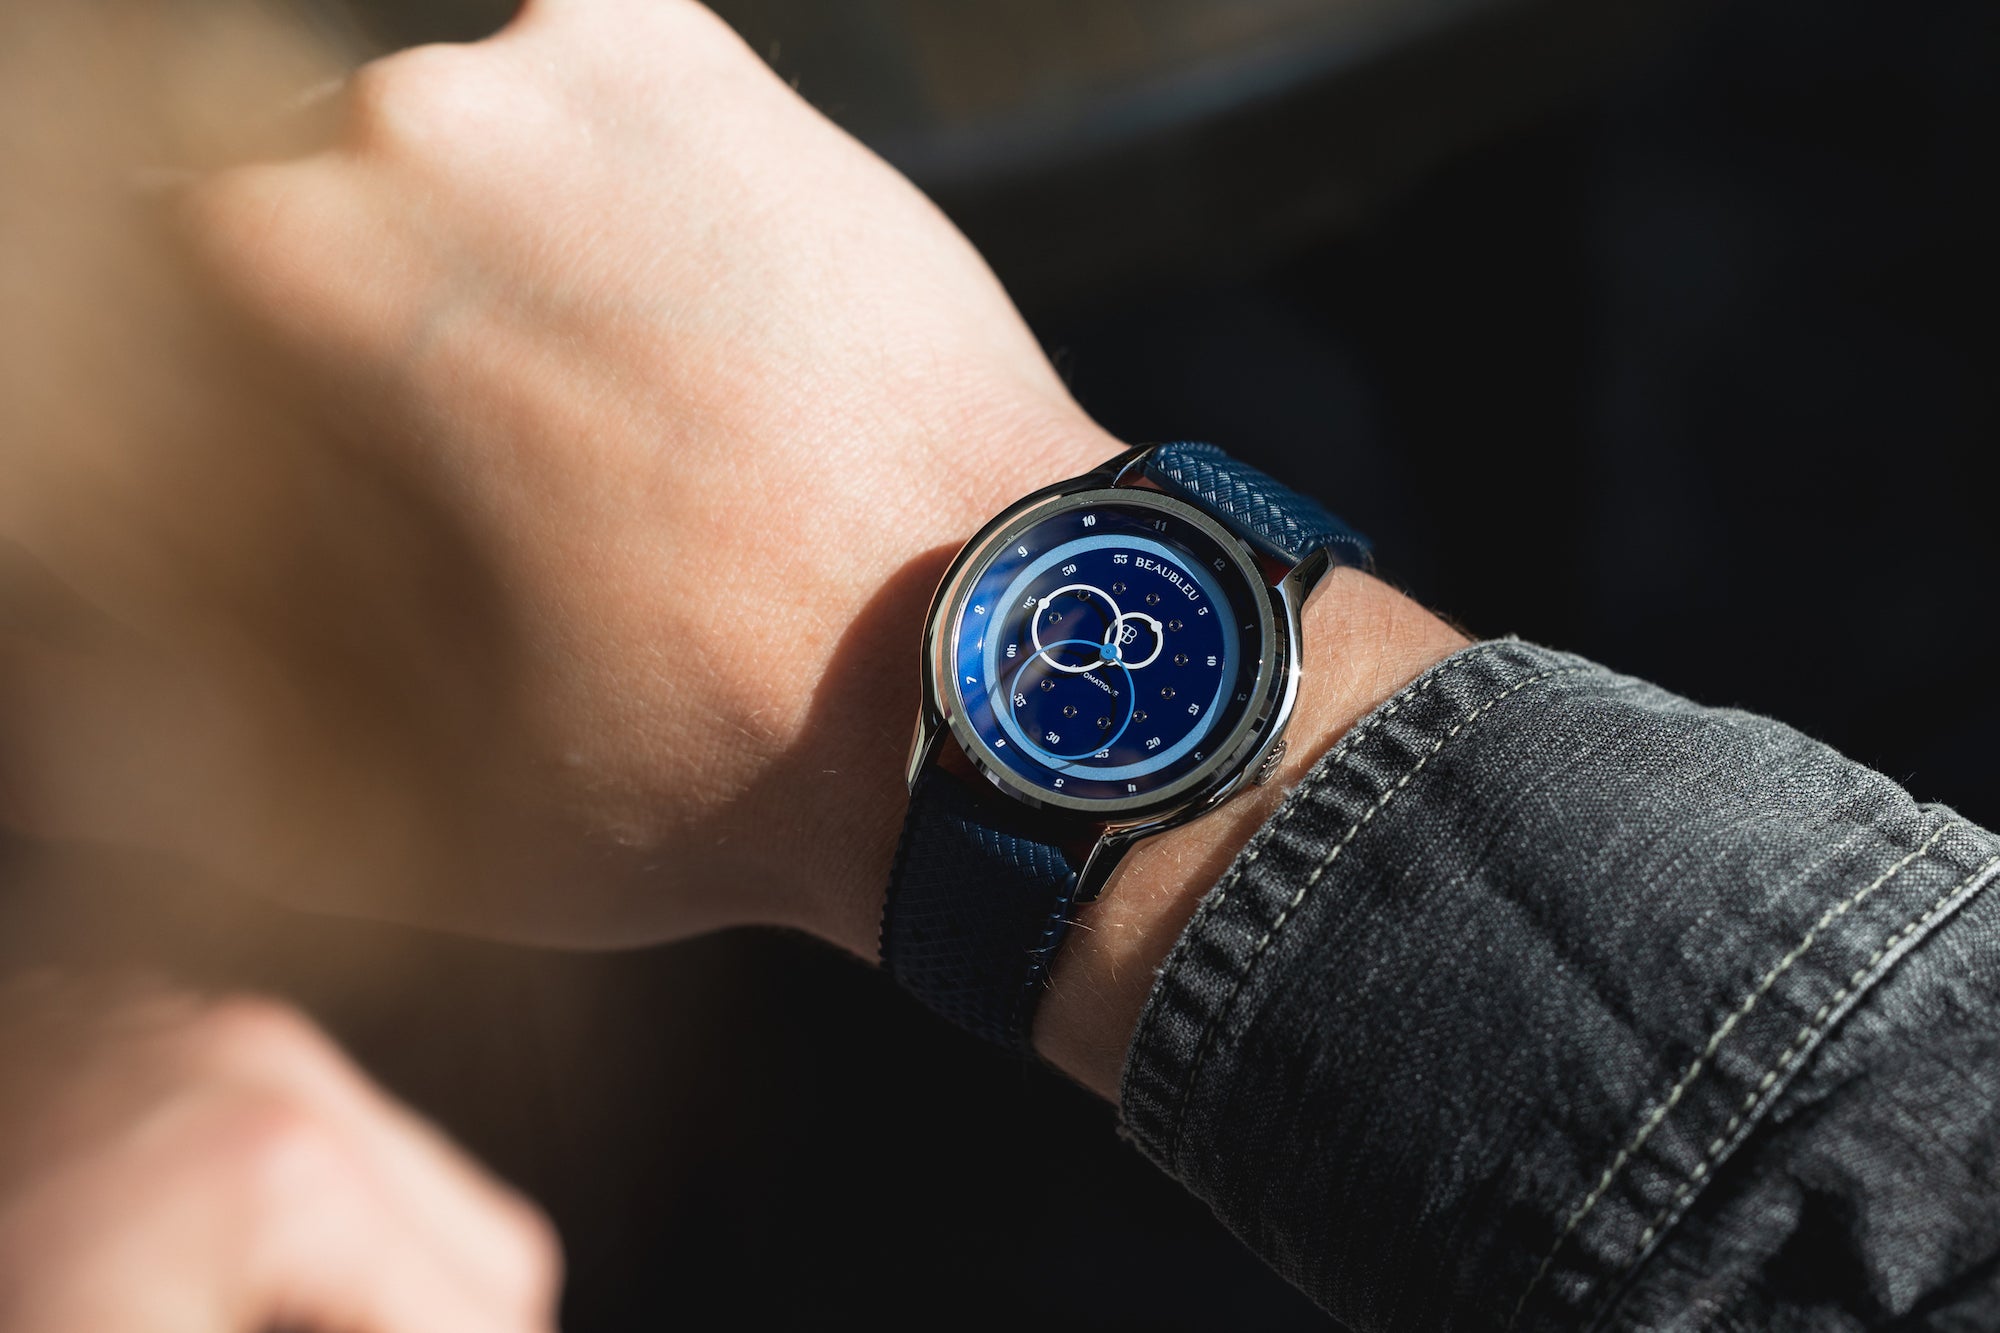 Montre Vitruve GMT Bleu avec un bracelet Tropic bleu portée au poignet d'un homme